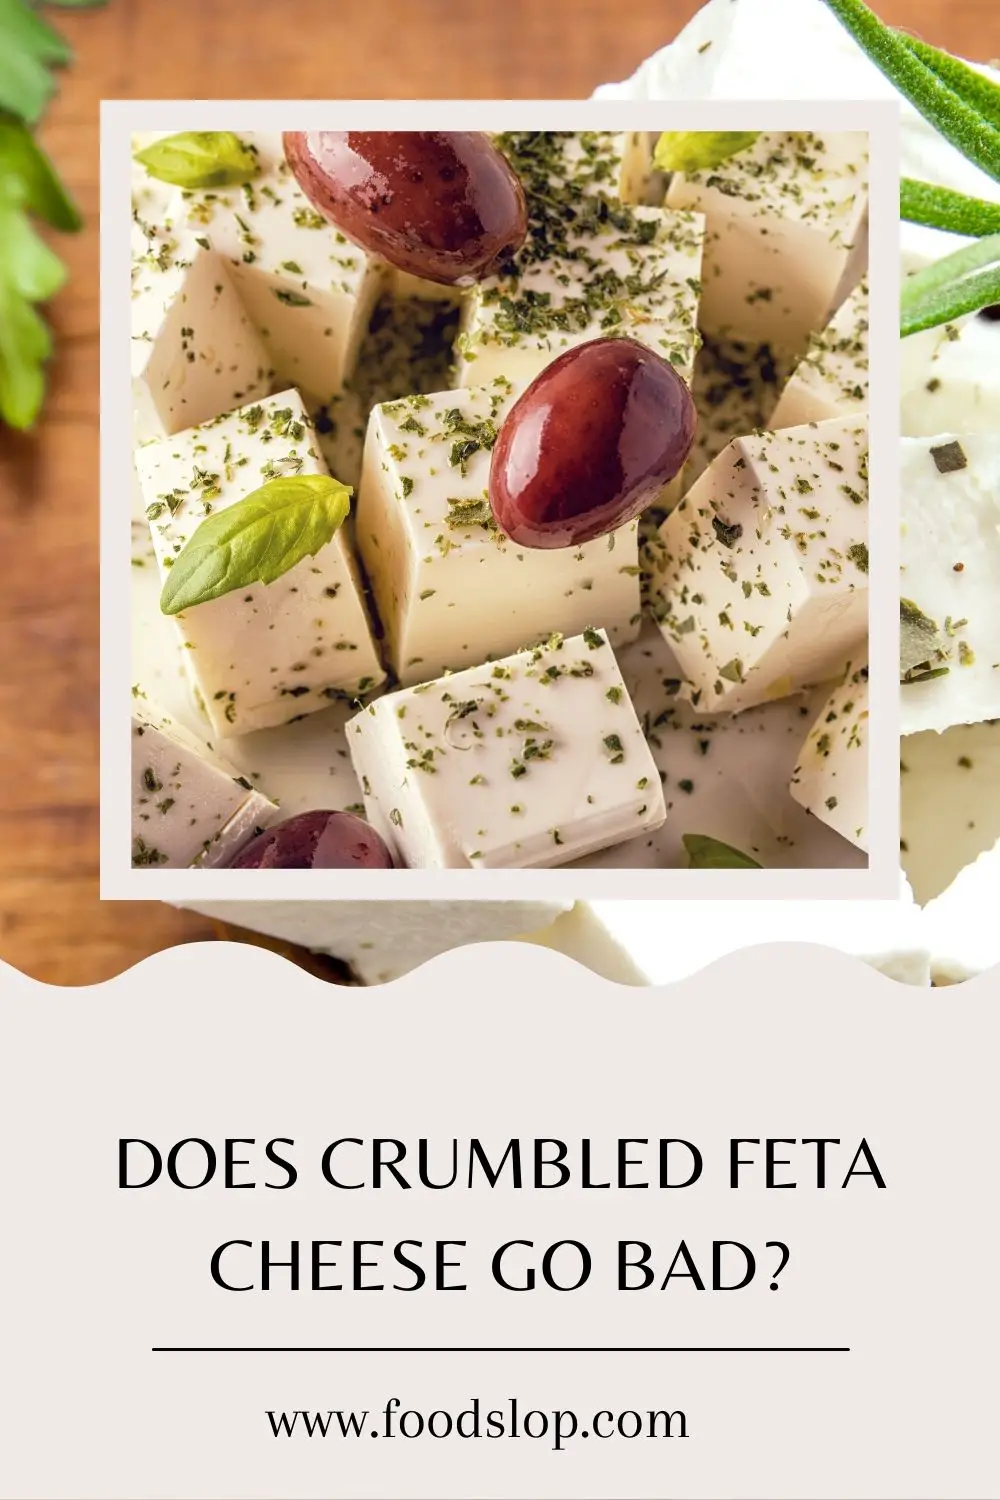 Does Crumbled Feta Cheese Go Bad?